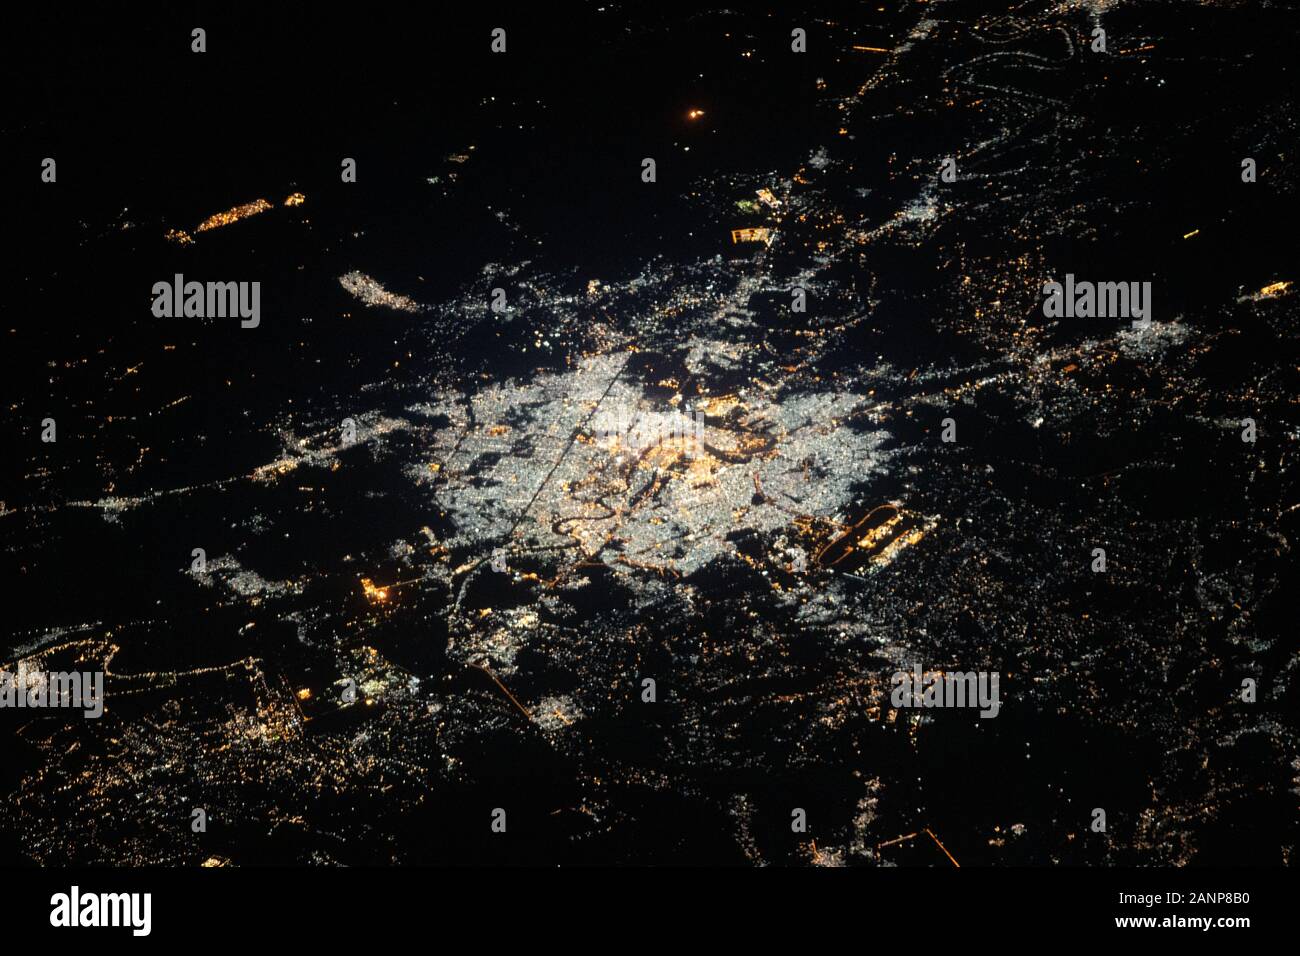 Irak - 4 Jan 2020 - Bagdad Irak wie ein Astronaut auf der Internationalen Raumstation gesehen Stockfoto